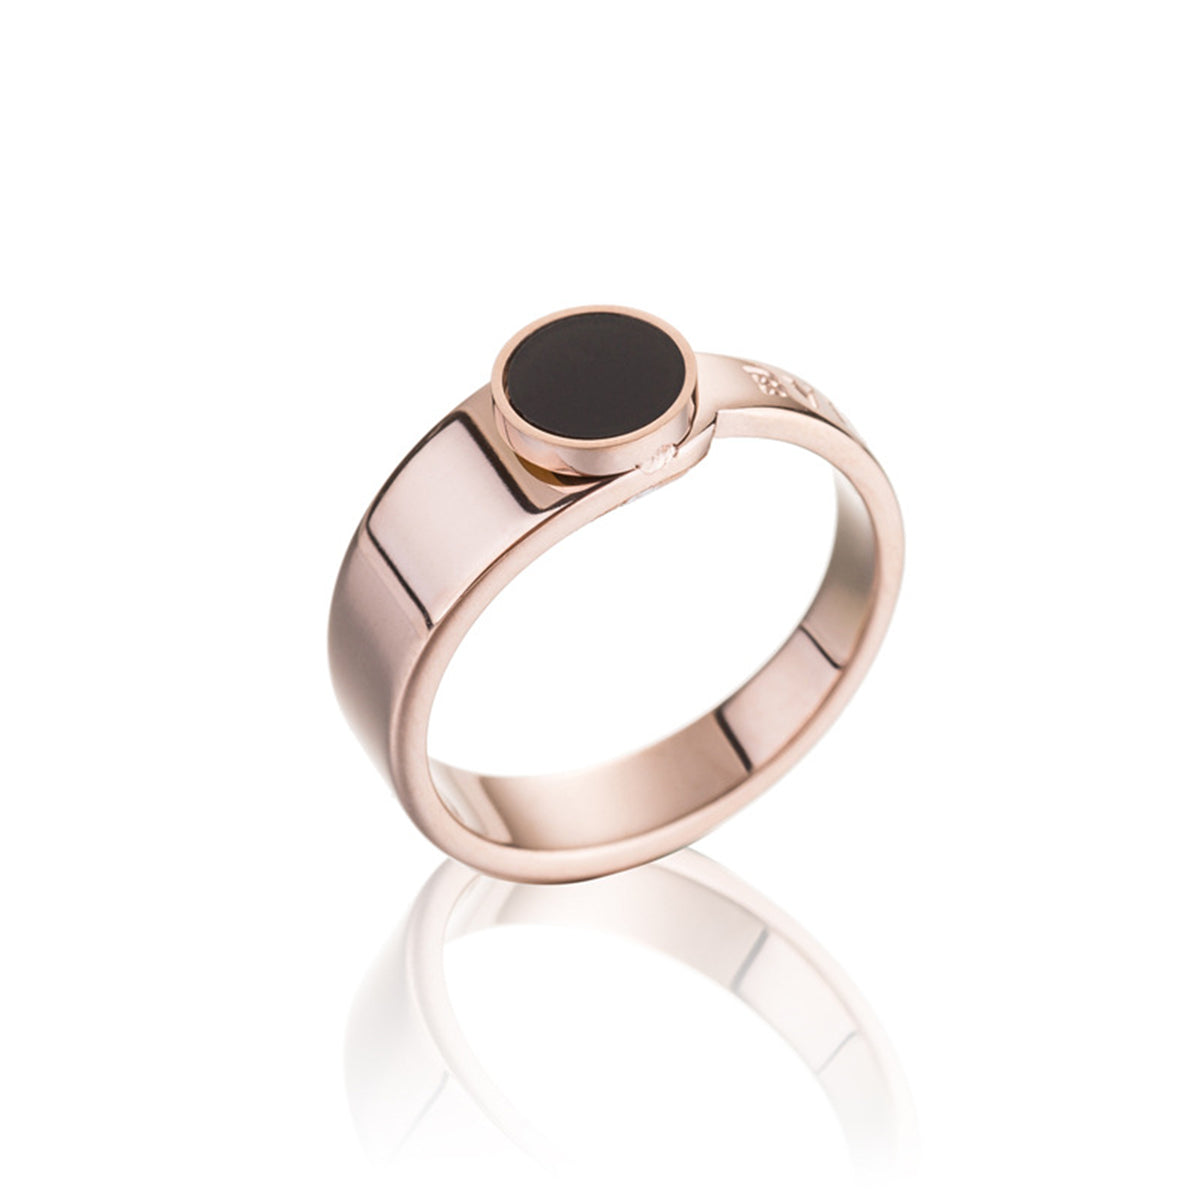 Black & 18K Rose Gold-Plated 'Bvicurl' Ring